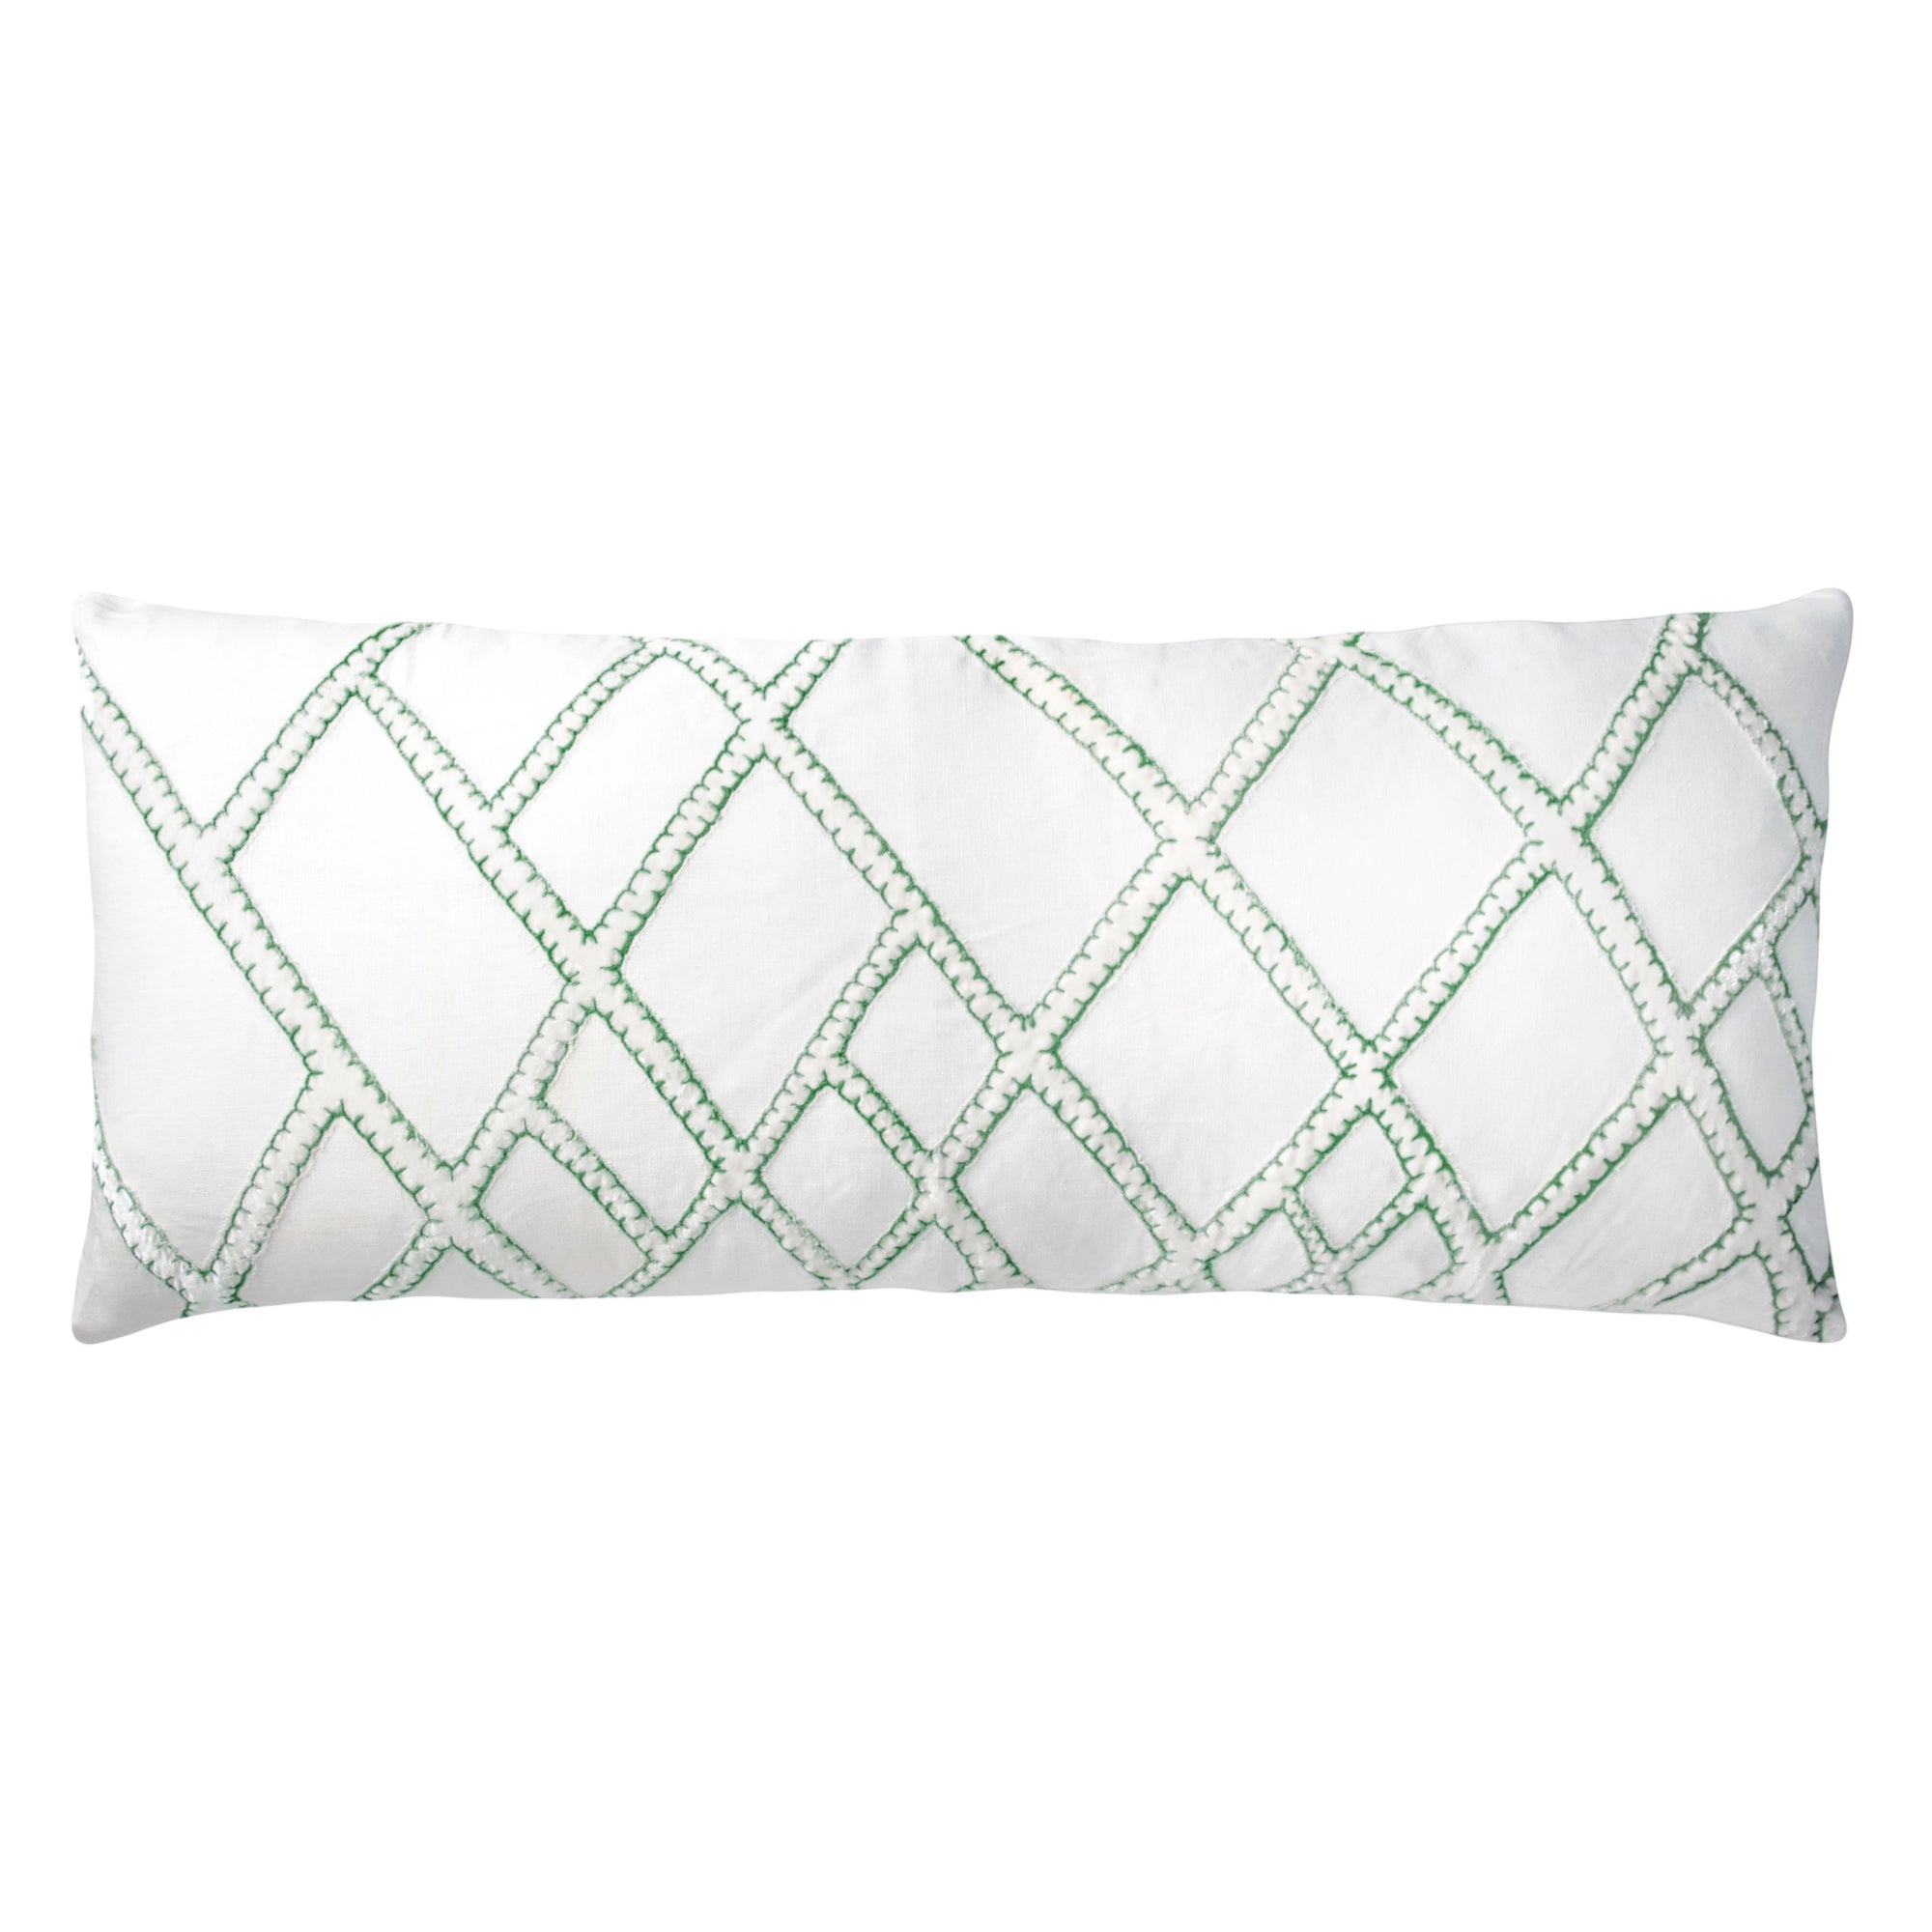 Fig Linens - Grass Net Velvet Appliqué Large Boudoir Pillow by Kevin O'Brien Studio